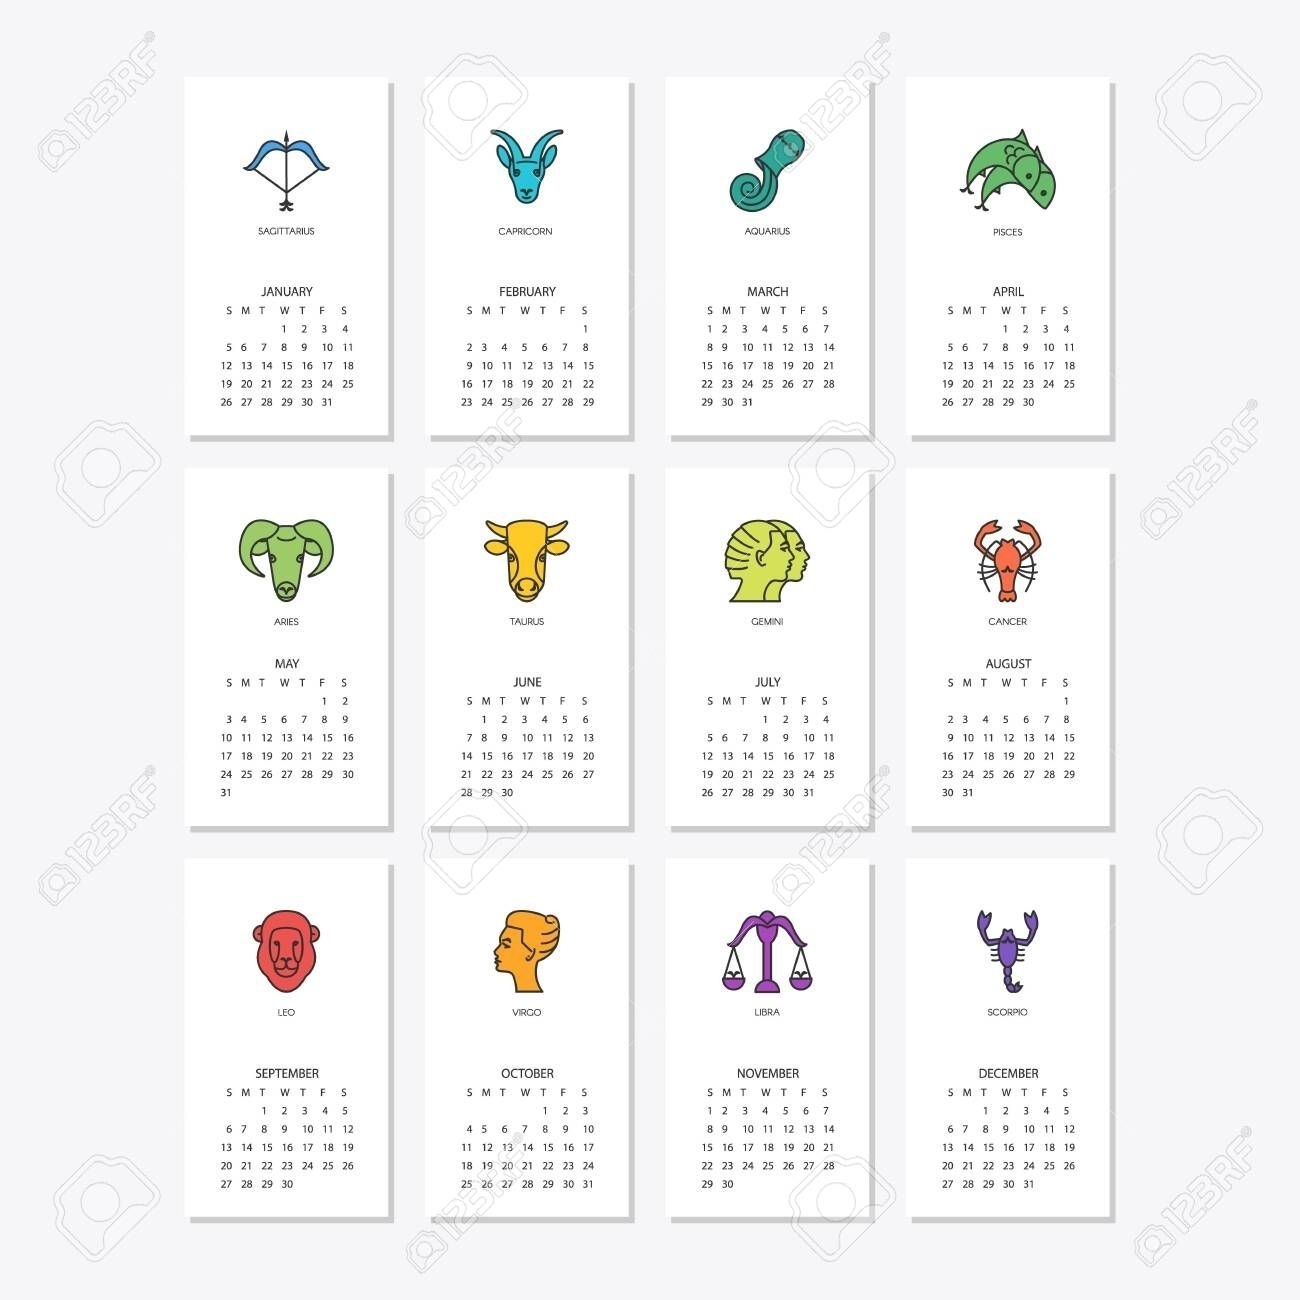 Zodiac Calendar Dates And Signs In 2020 | Zodiac Signs The Zodiac Calendar Dates